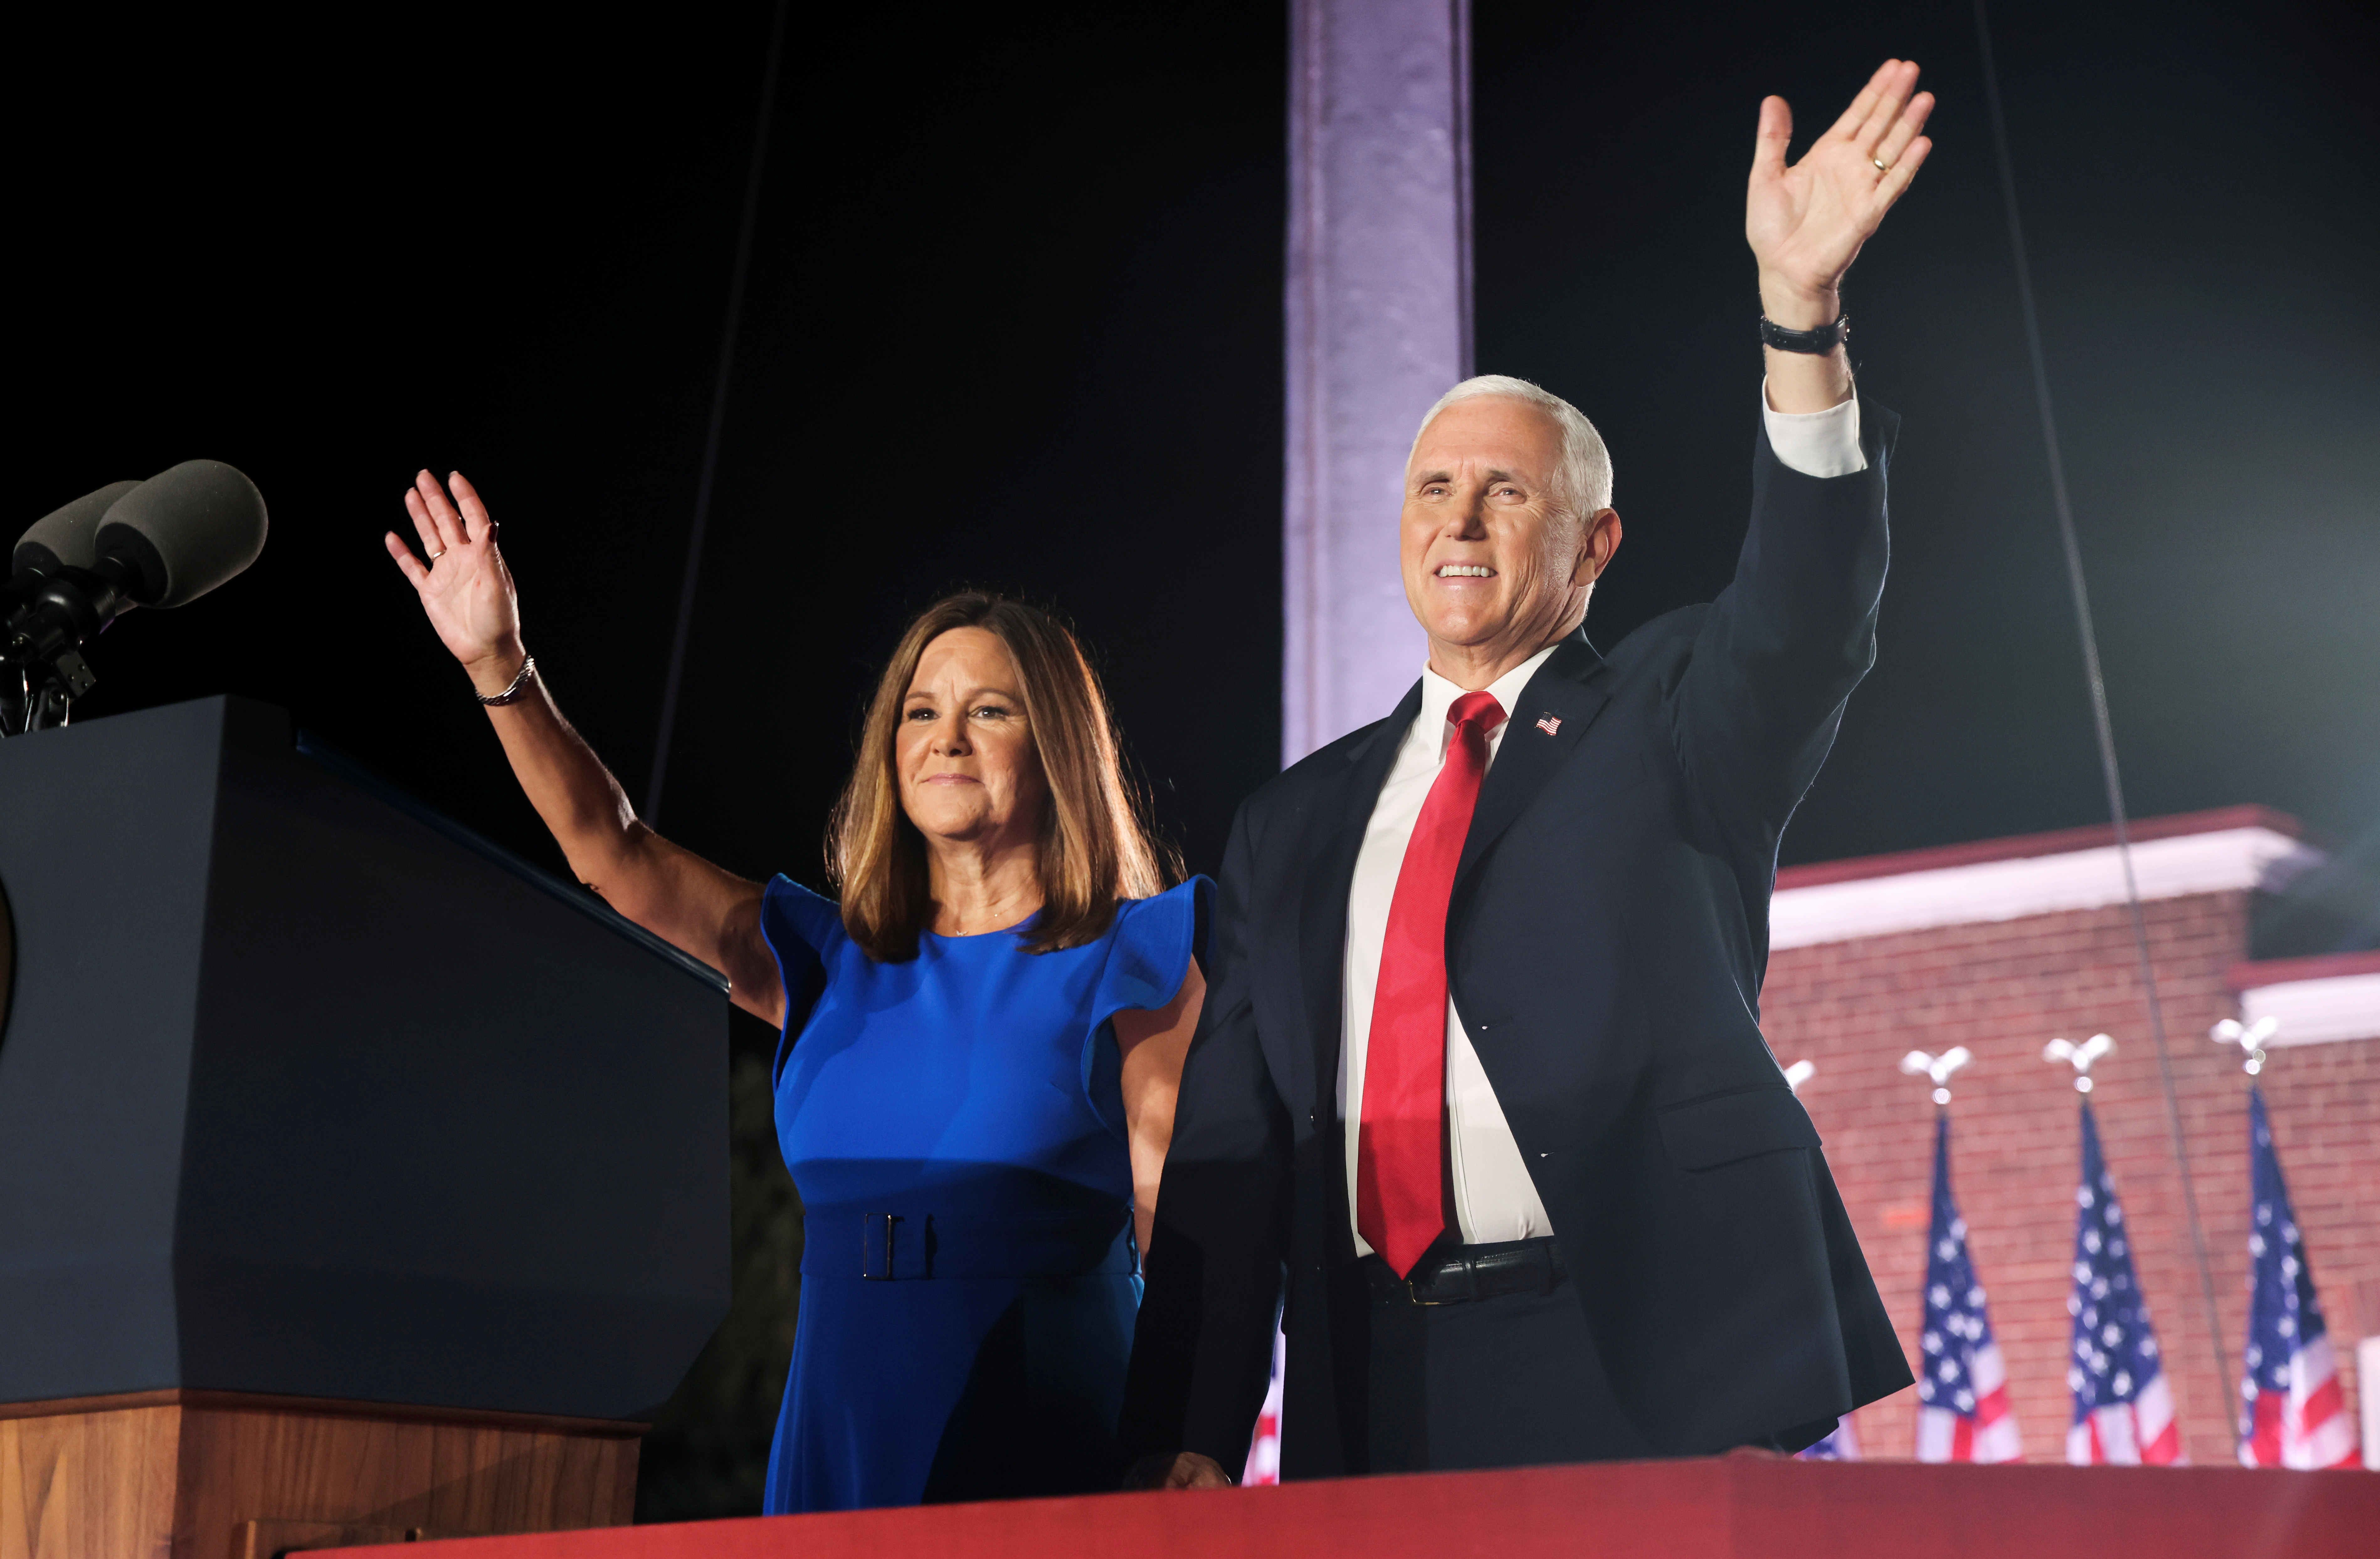 El vicepresidente junto a su esposa Karen Pence. REUTERS/Jonathan Ernst